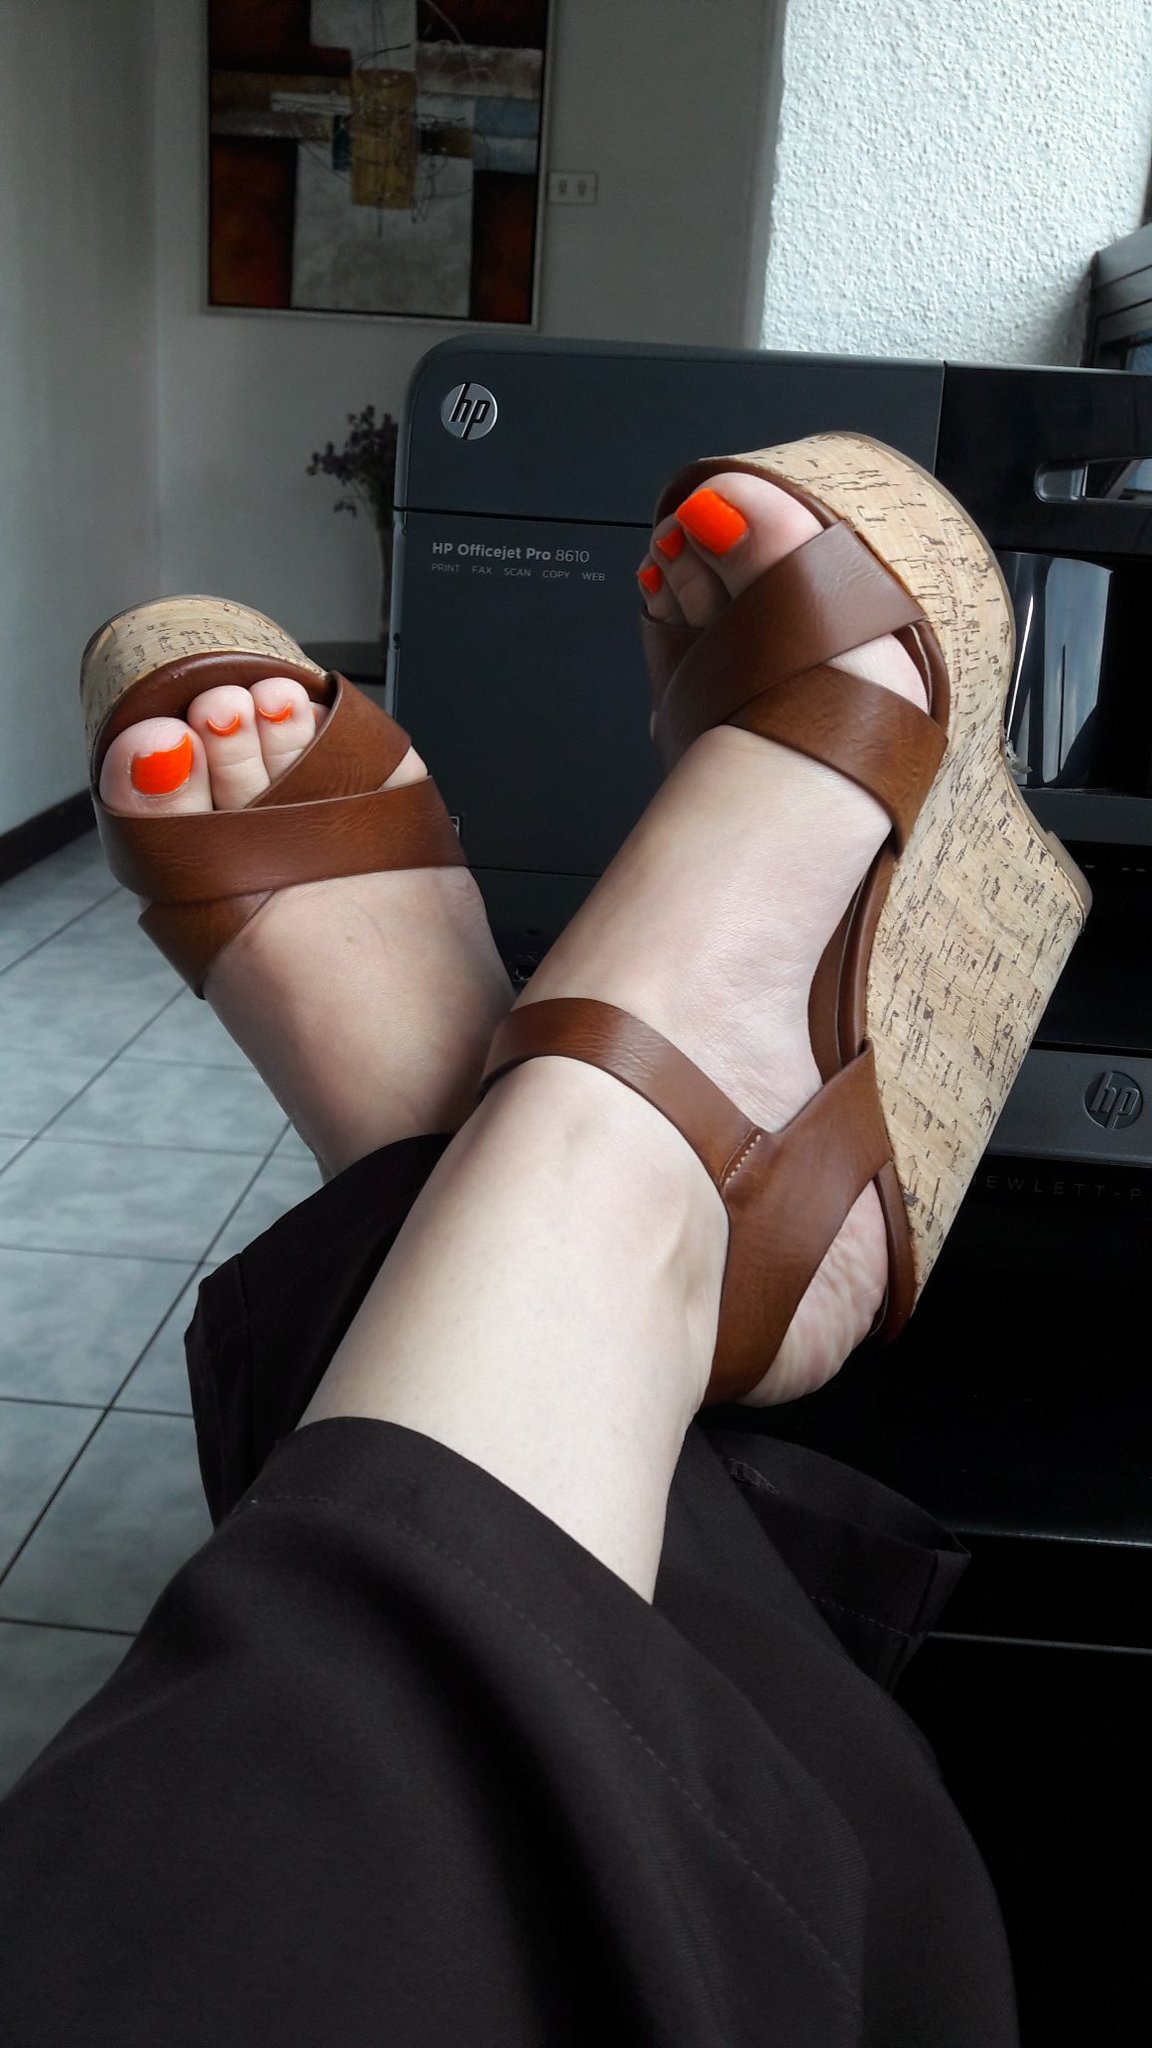 Legítimo Cuerda Cría PIES (FEET & SHOES ) on Twitter: "En la oficina @sugartoes17 brilla sus pies  hermosos sandalias fuera de serie muy bellas ella encanta  https://t.co/SL2V3jAnHC" / Twitter